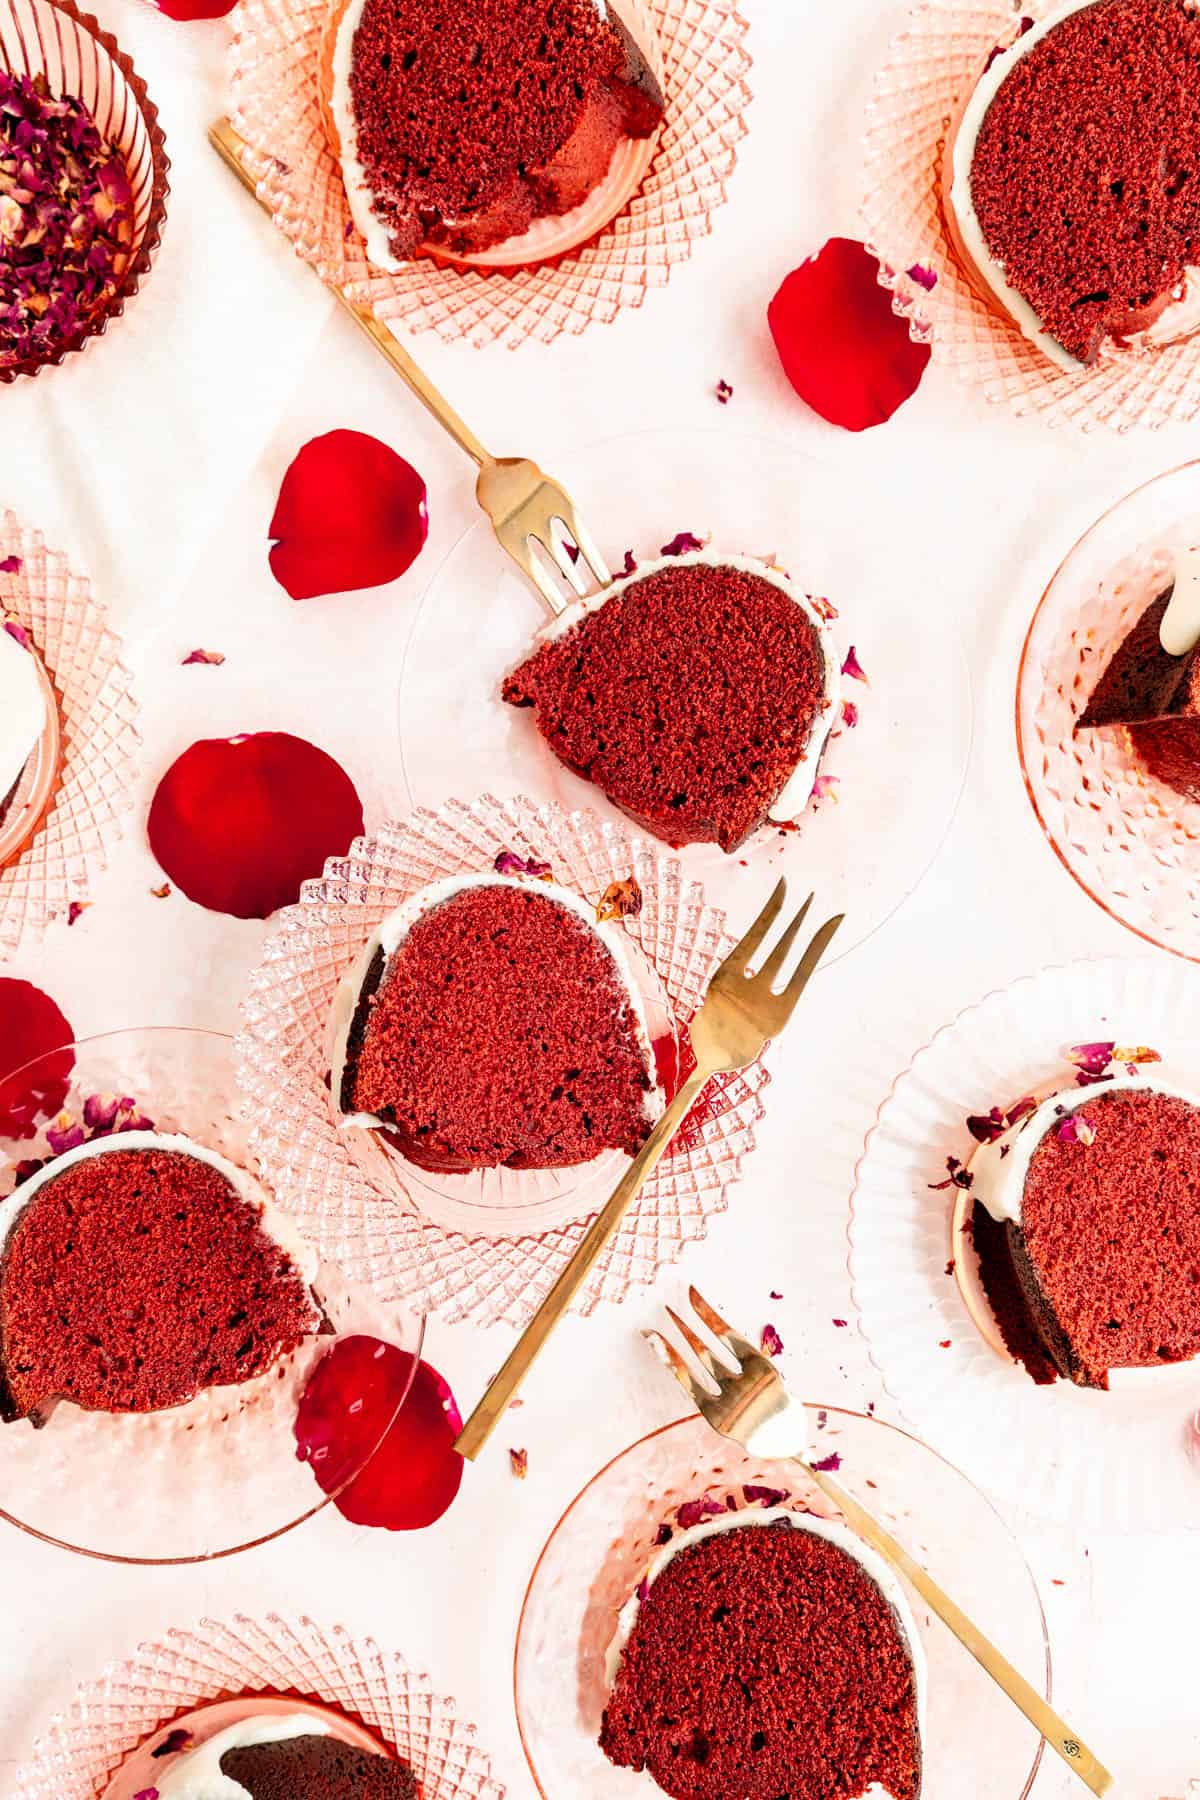 Slices of red velvet Bundt cake on pink crystal plates with gold forks and rose petals.